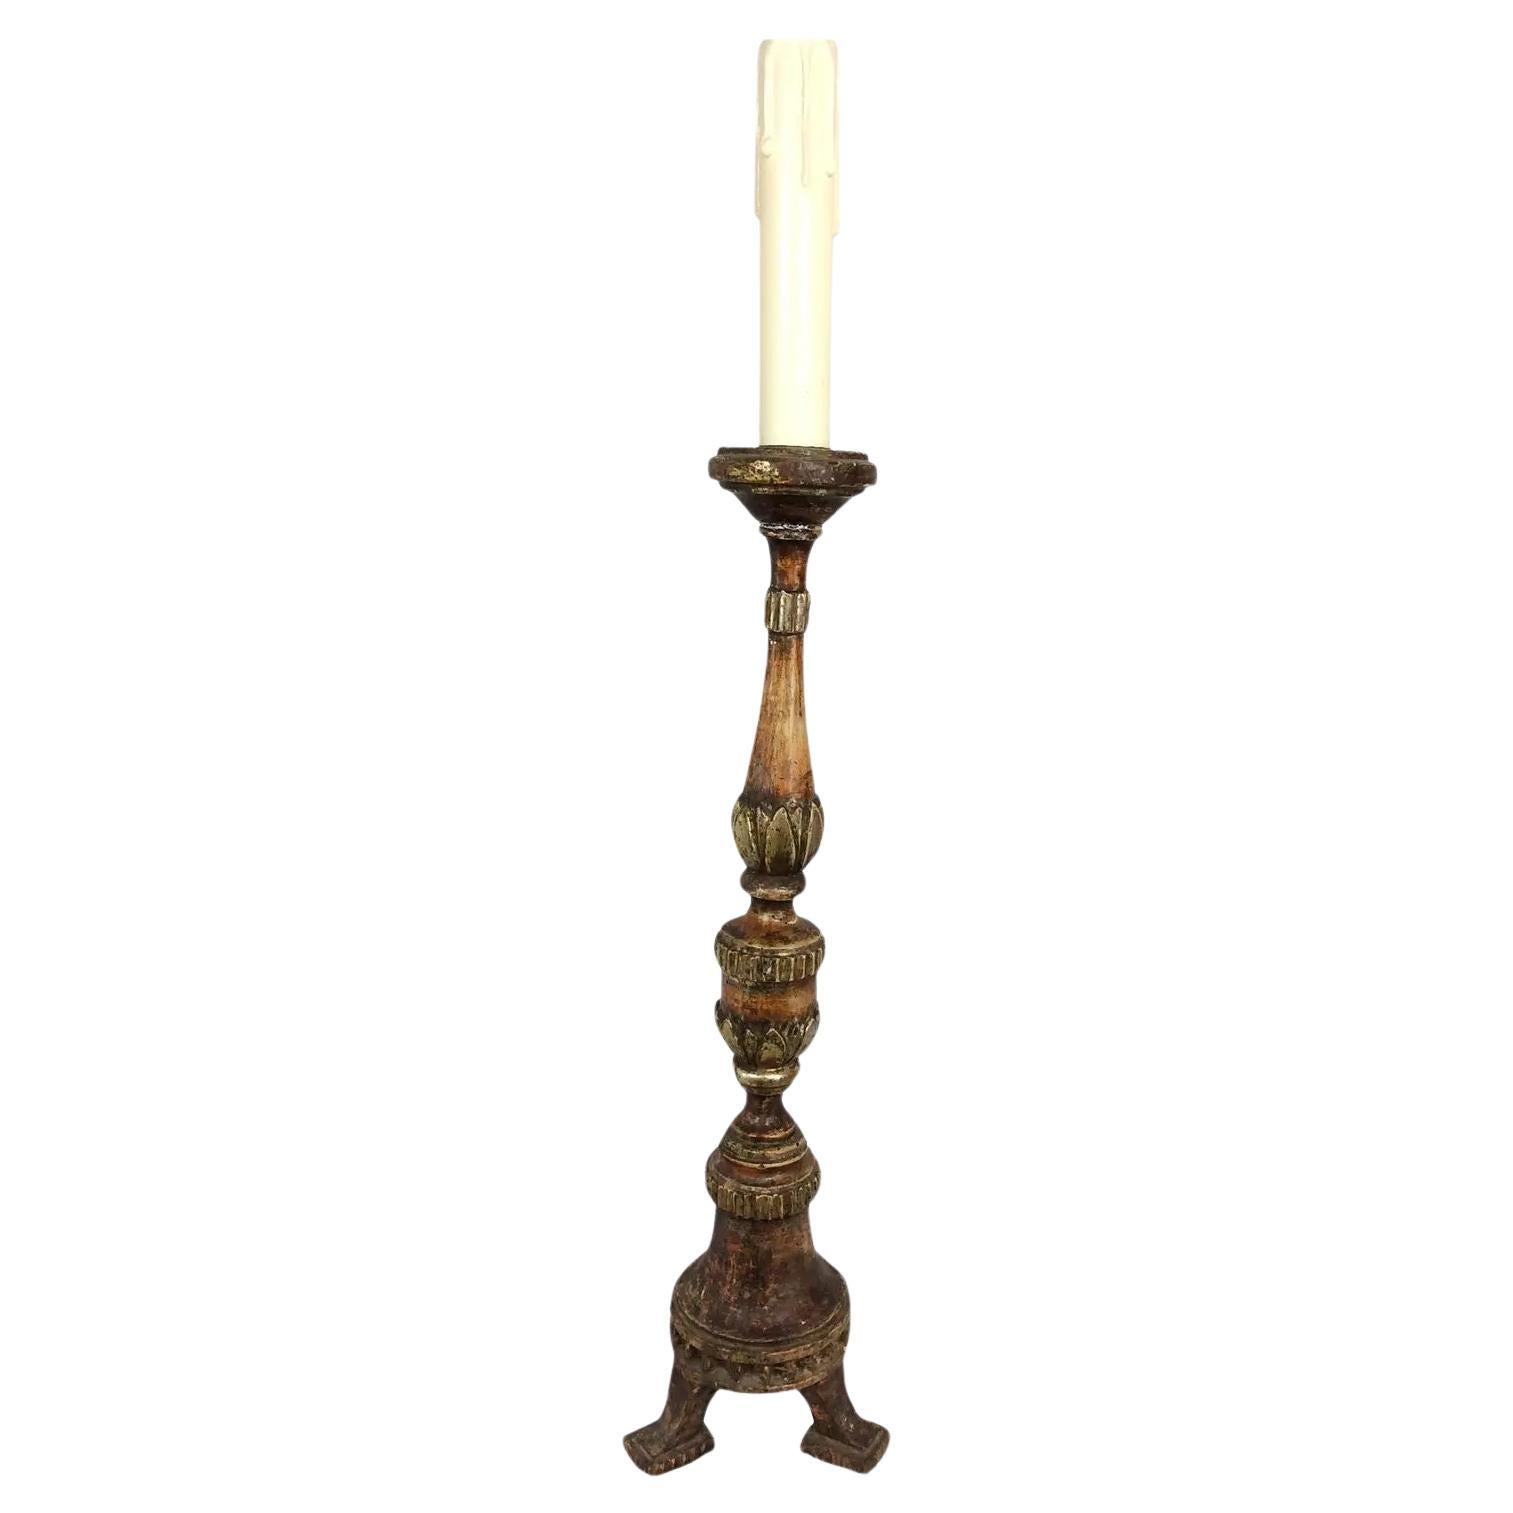 Stand ou épi de bougie en bois doré vénitien du XVIIIe siècle